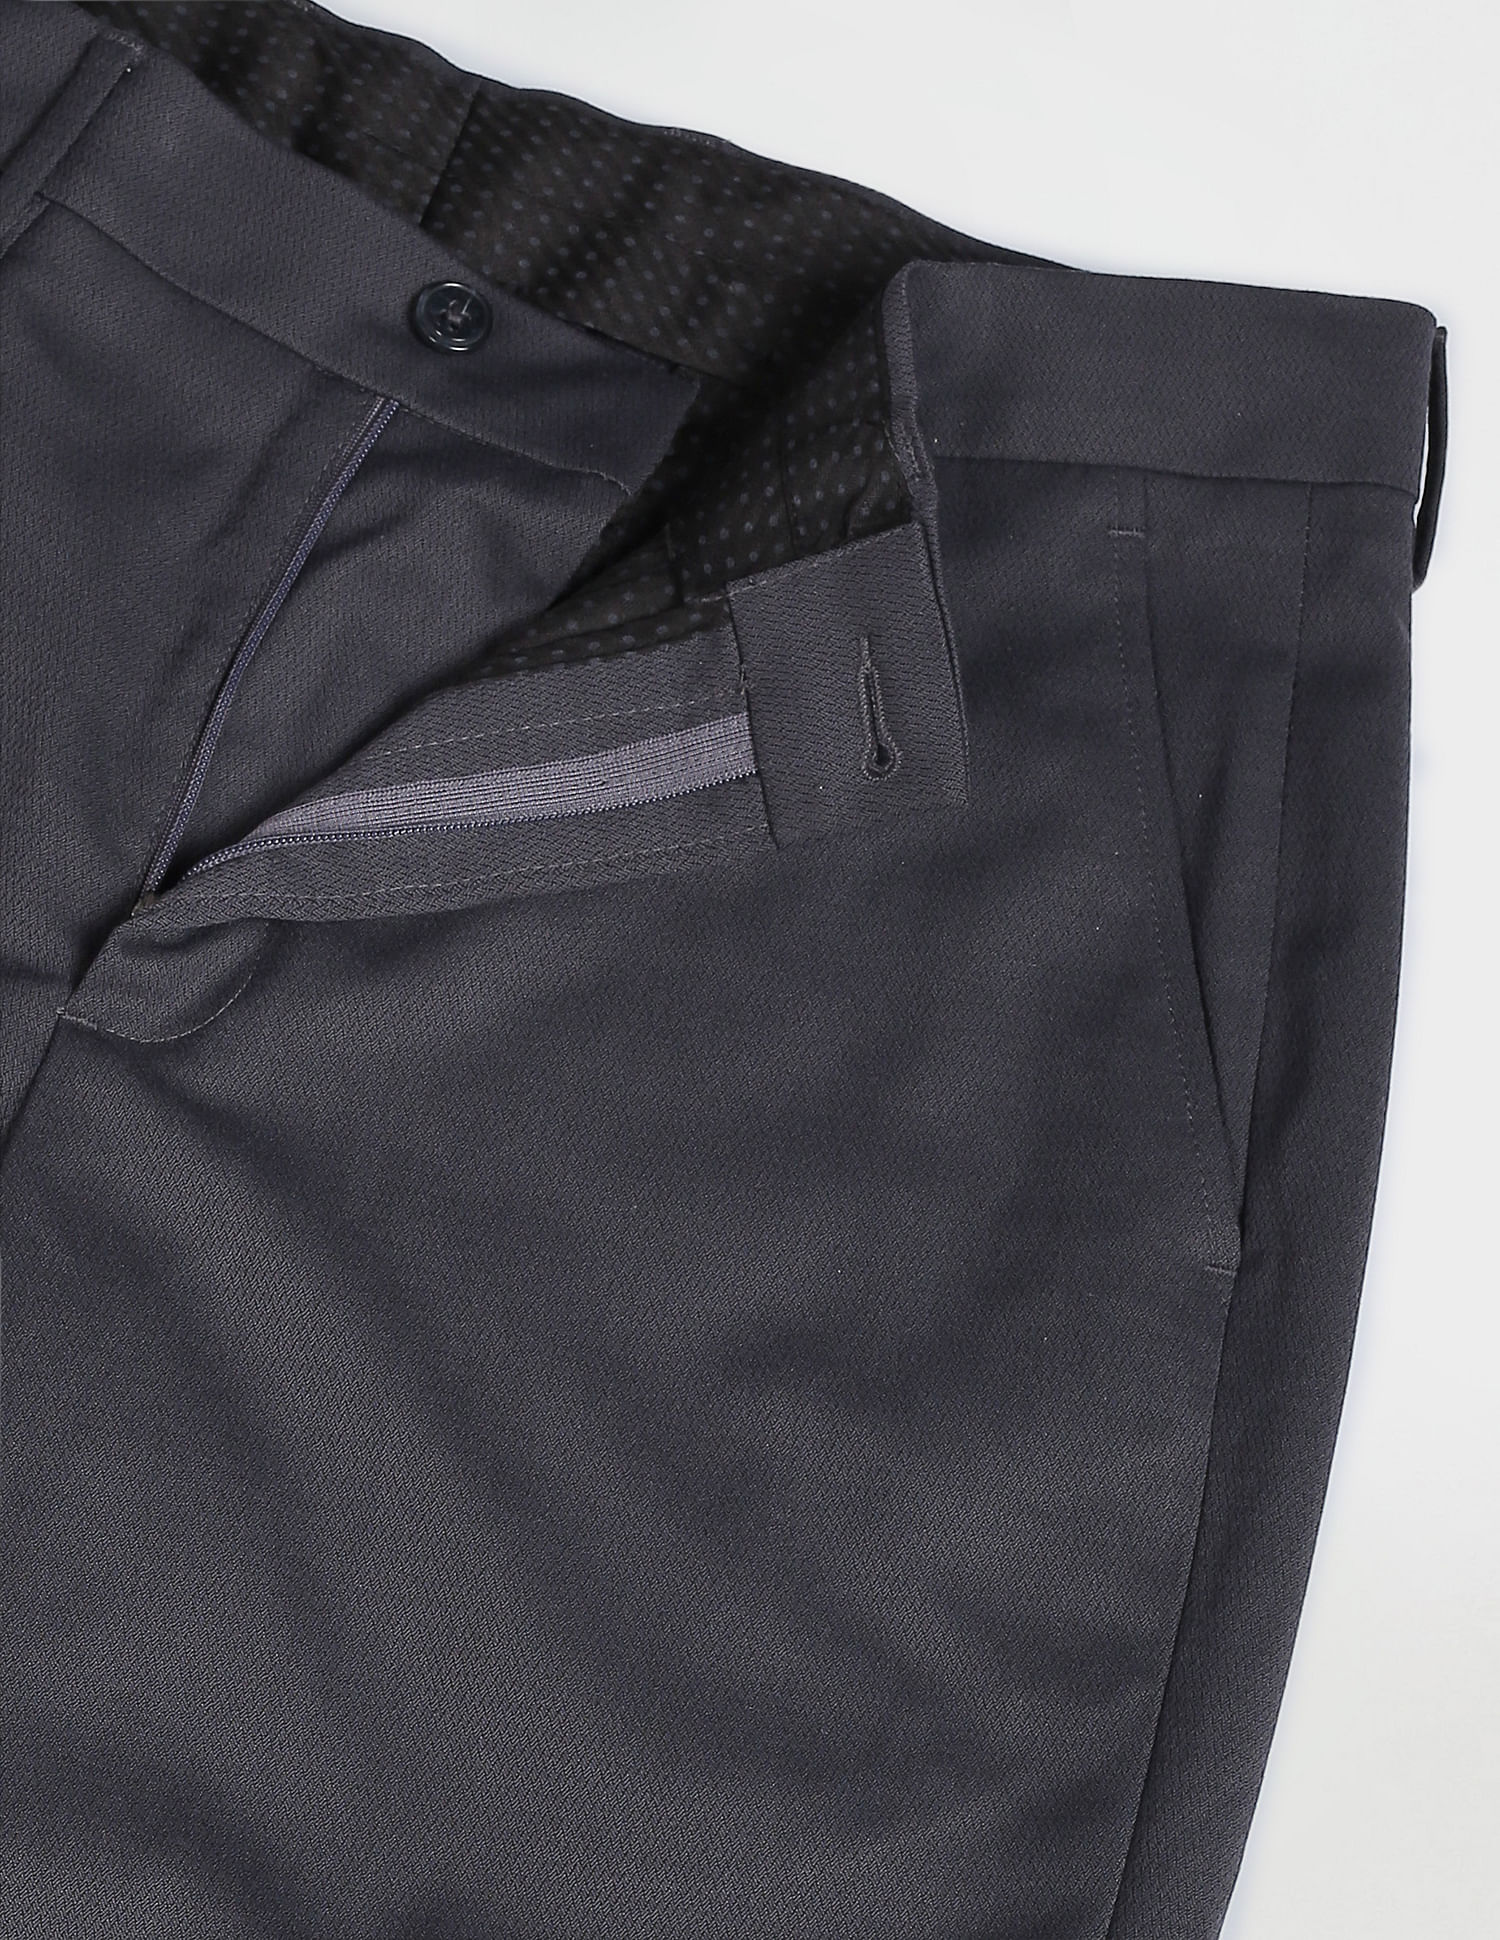 Buy Arrow Newyork Dobby Smart Flex Trousers online